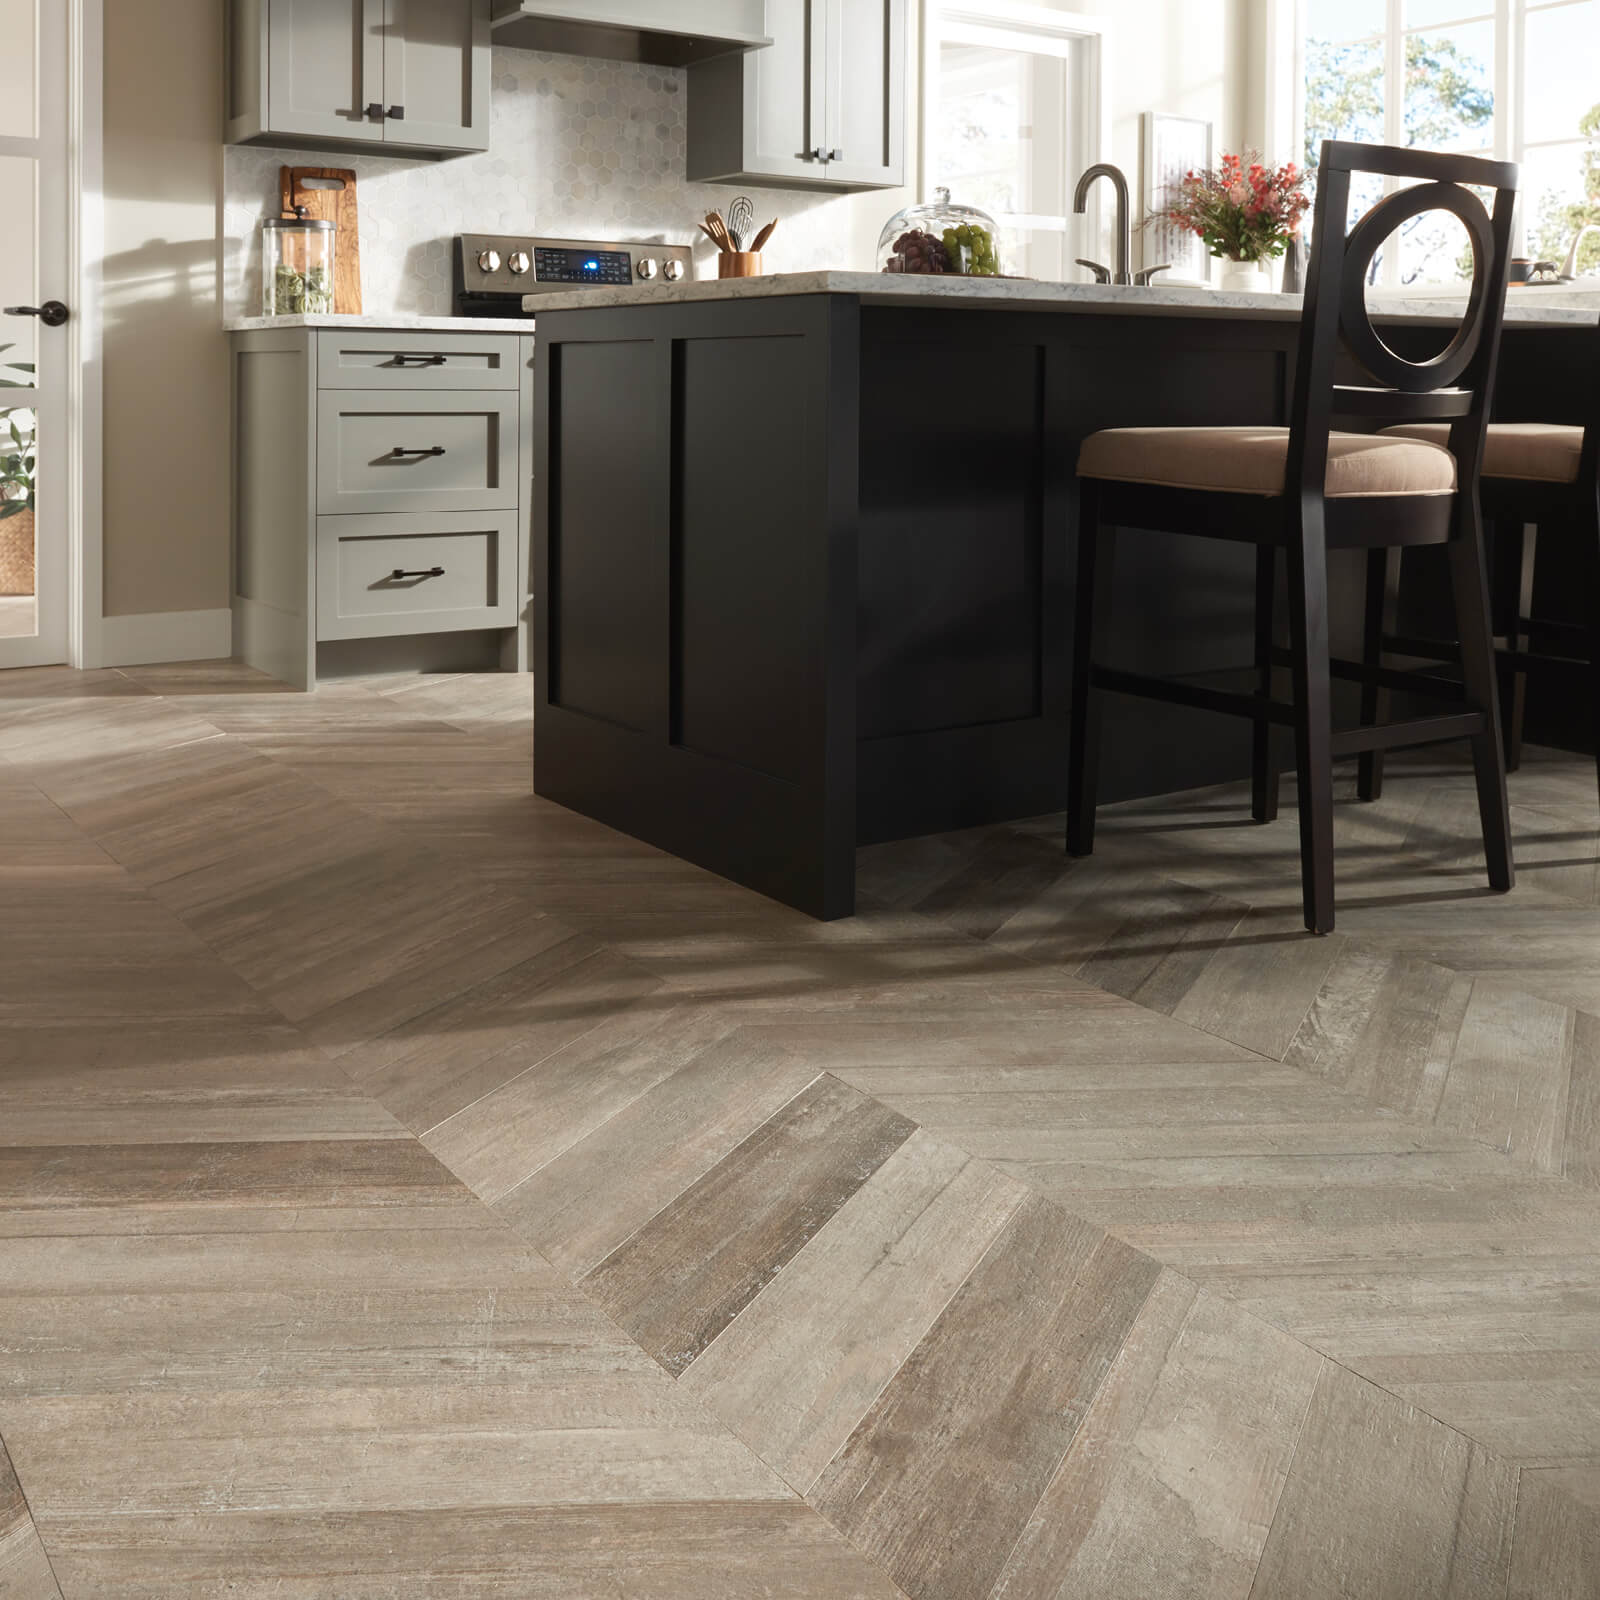 Glee chevron tile flooring | Nampa Floors